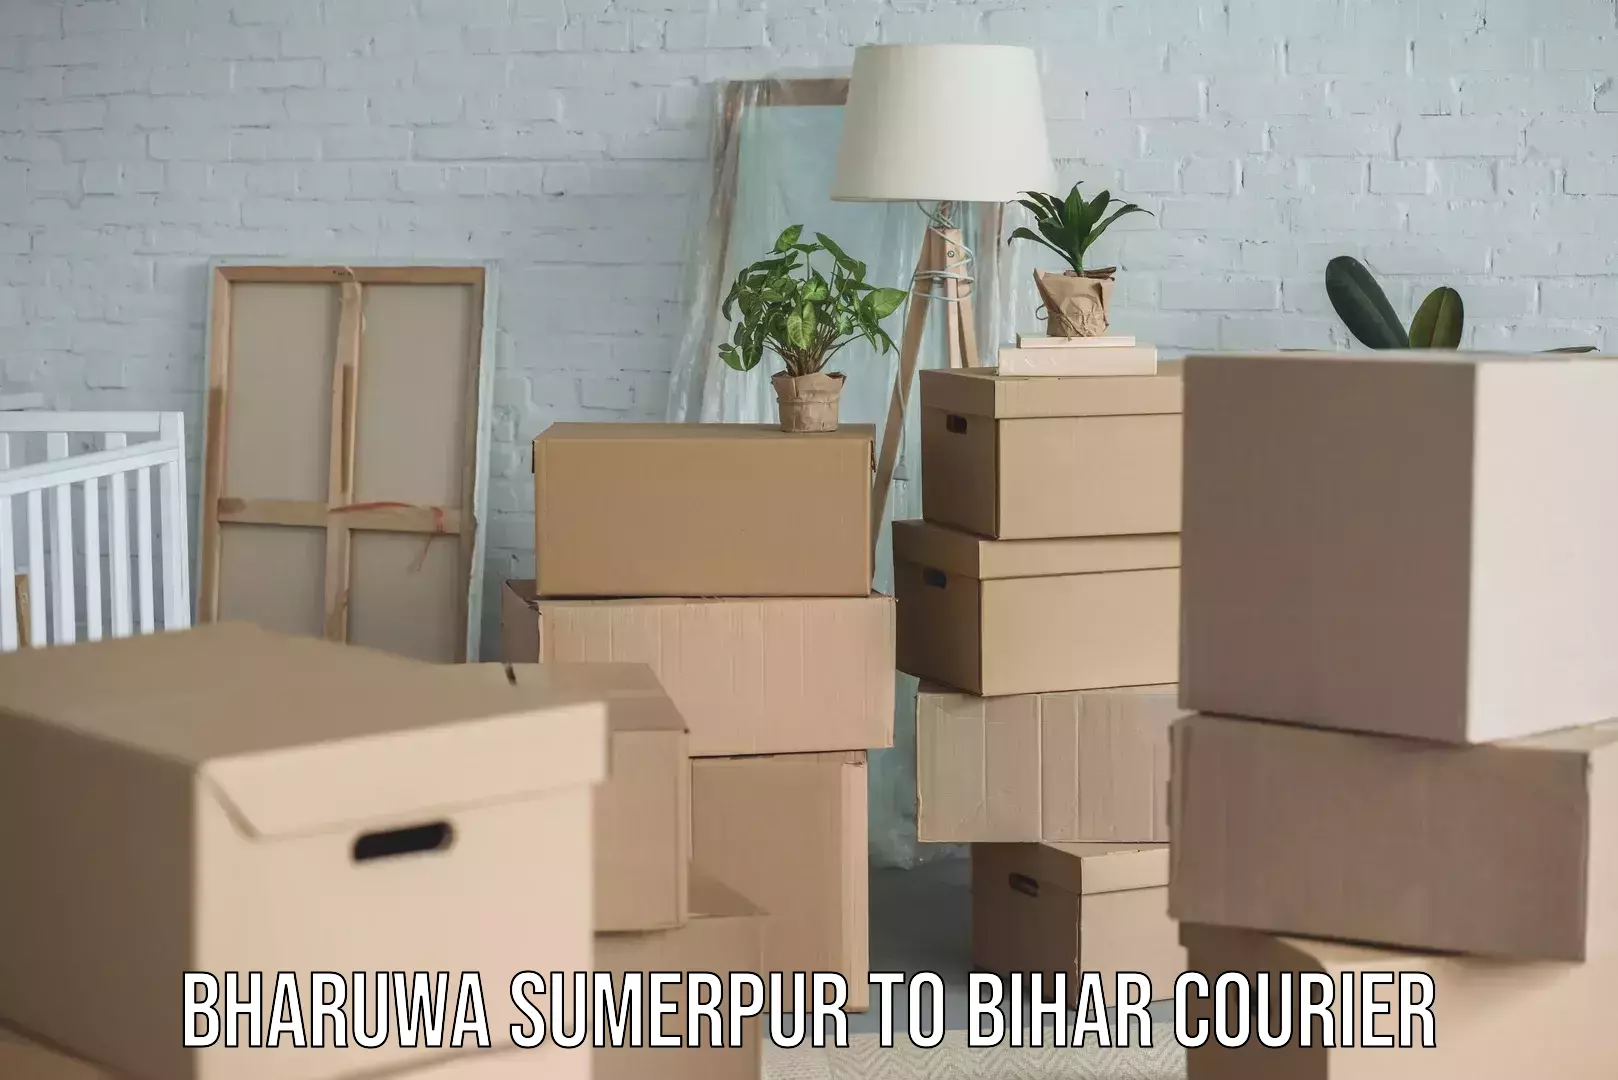 User-friendly courier app Bharuwa Sumerpur to Bihar